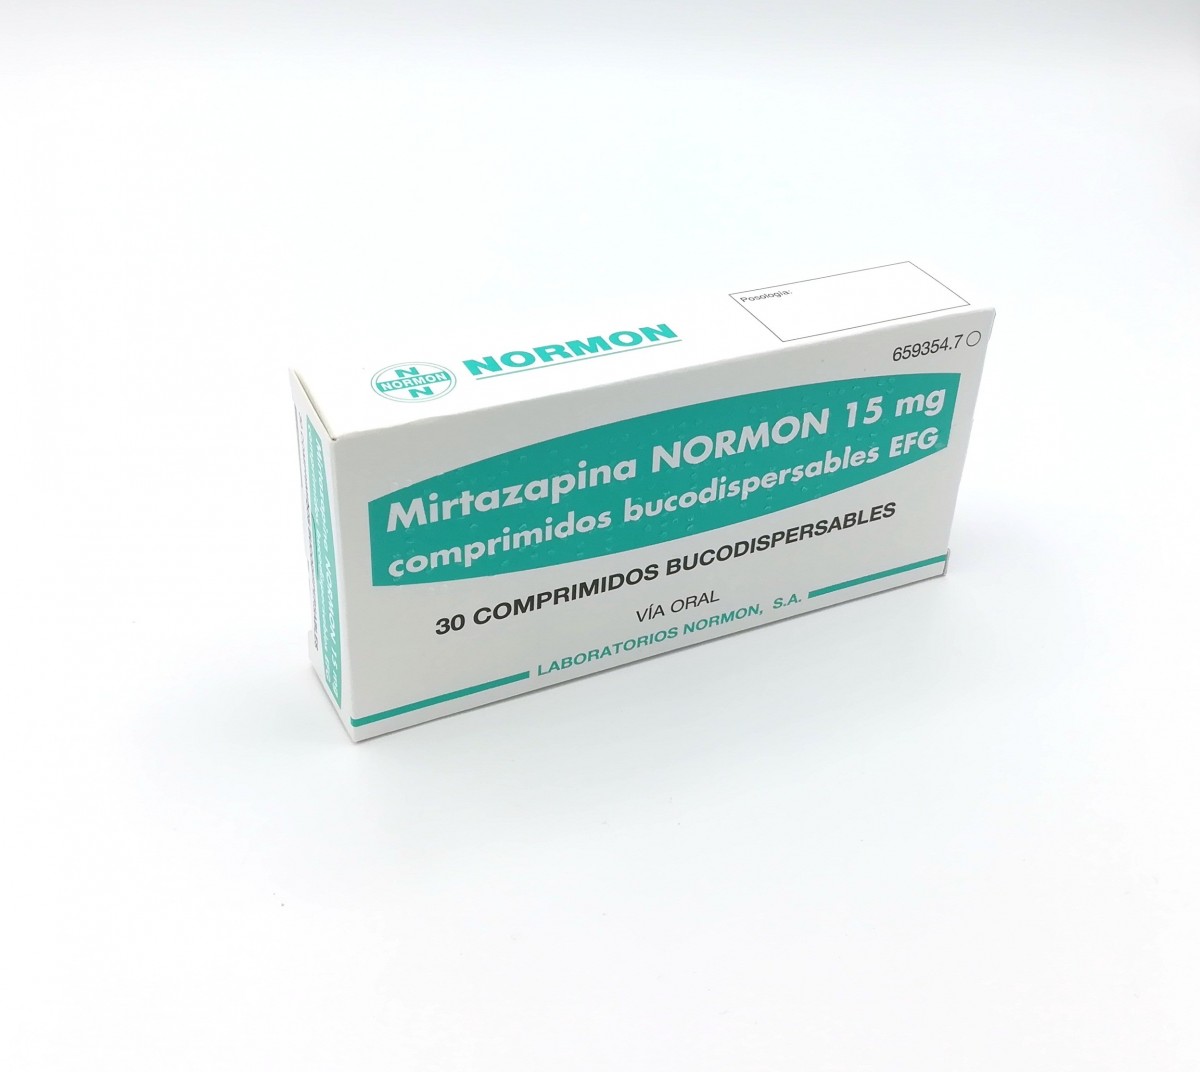 MIRTAZAPINA ETHYPHARM 15 mg COMPRIMIDOS BUCODISPERSABLES EFG , 30 comprimidos fotografía del envase.